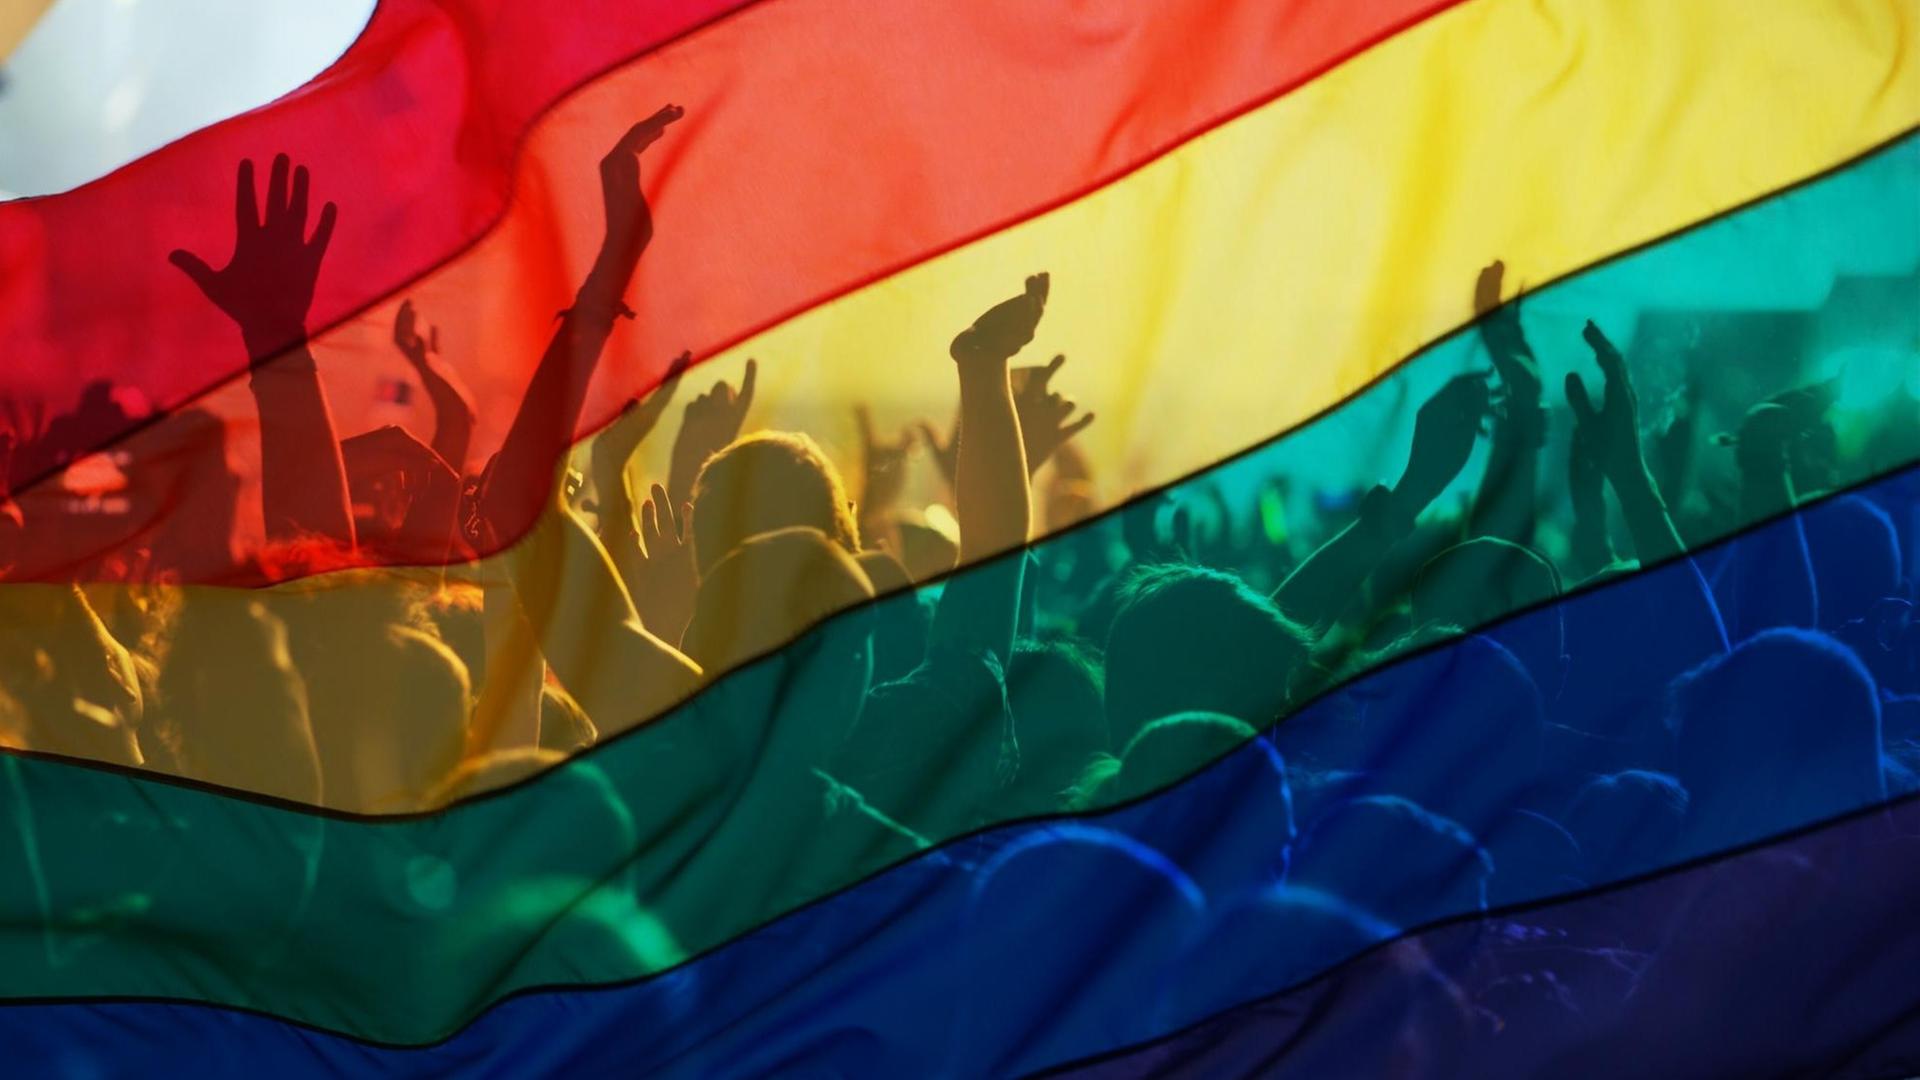 Das Bild zeigt Teilnehmer*innen einer Schwulen- und Lesbenparade mit einer Regenbogenfahne, als Symbol von Liebe und Toleranz.